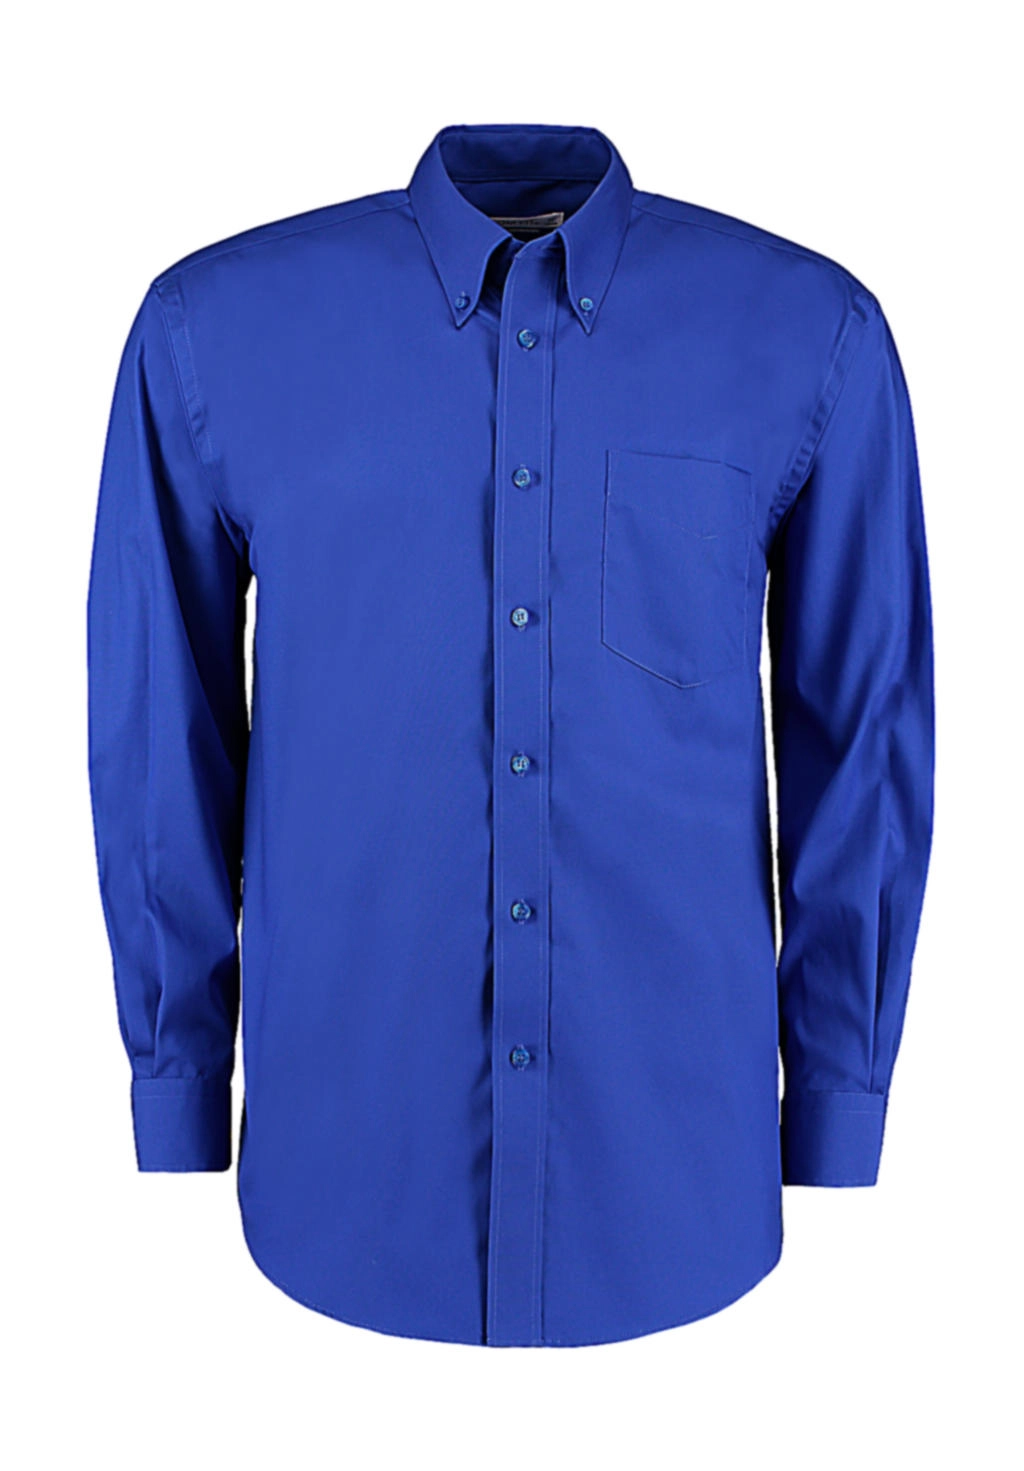 Classic Fit Premium Oxford Shirt zum Besticken und Bedrucken in der Farbe Royal mit Ihren Logo, Schriftzug oder Motiv.